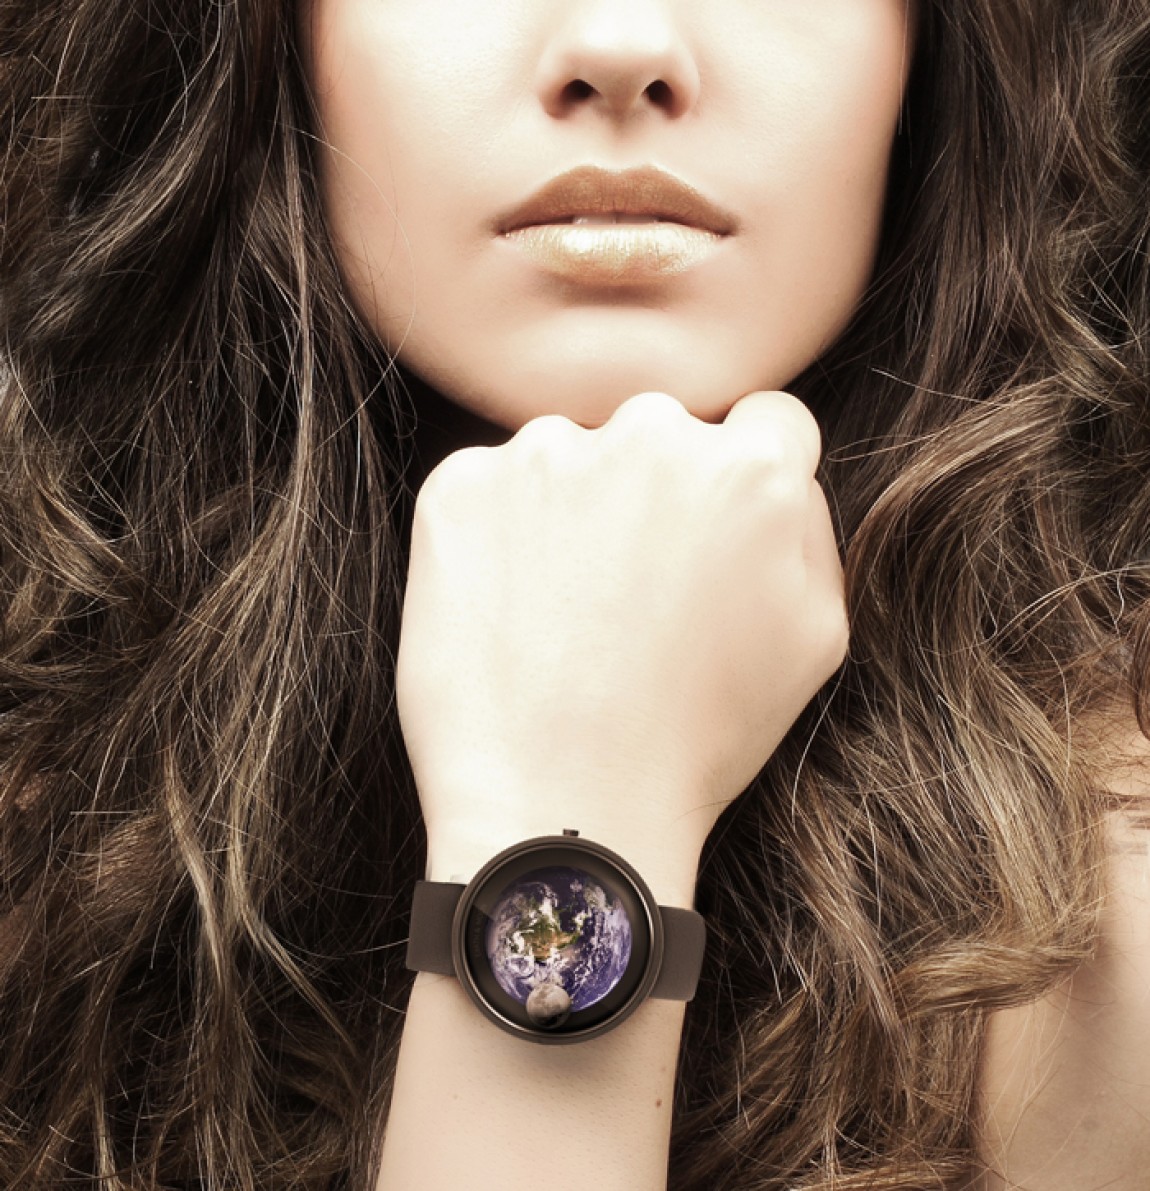 Красивые часы на руки. Красивые женские часы. Красивые часы на руку. Часы на руку женские. Девушка с часами.